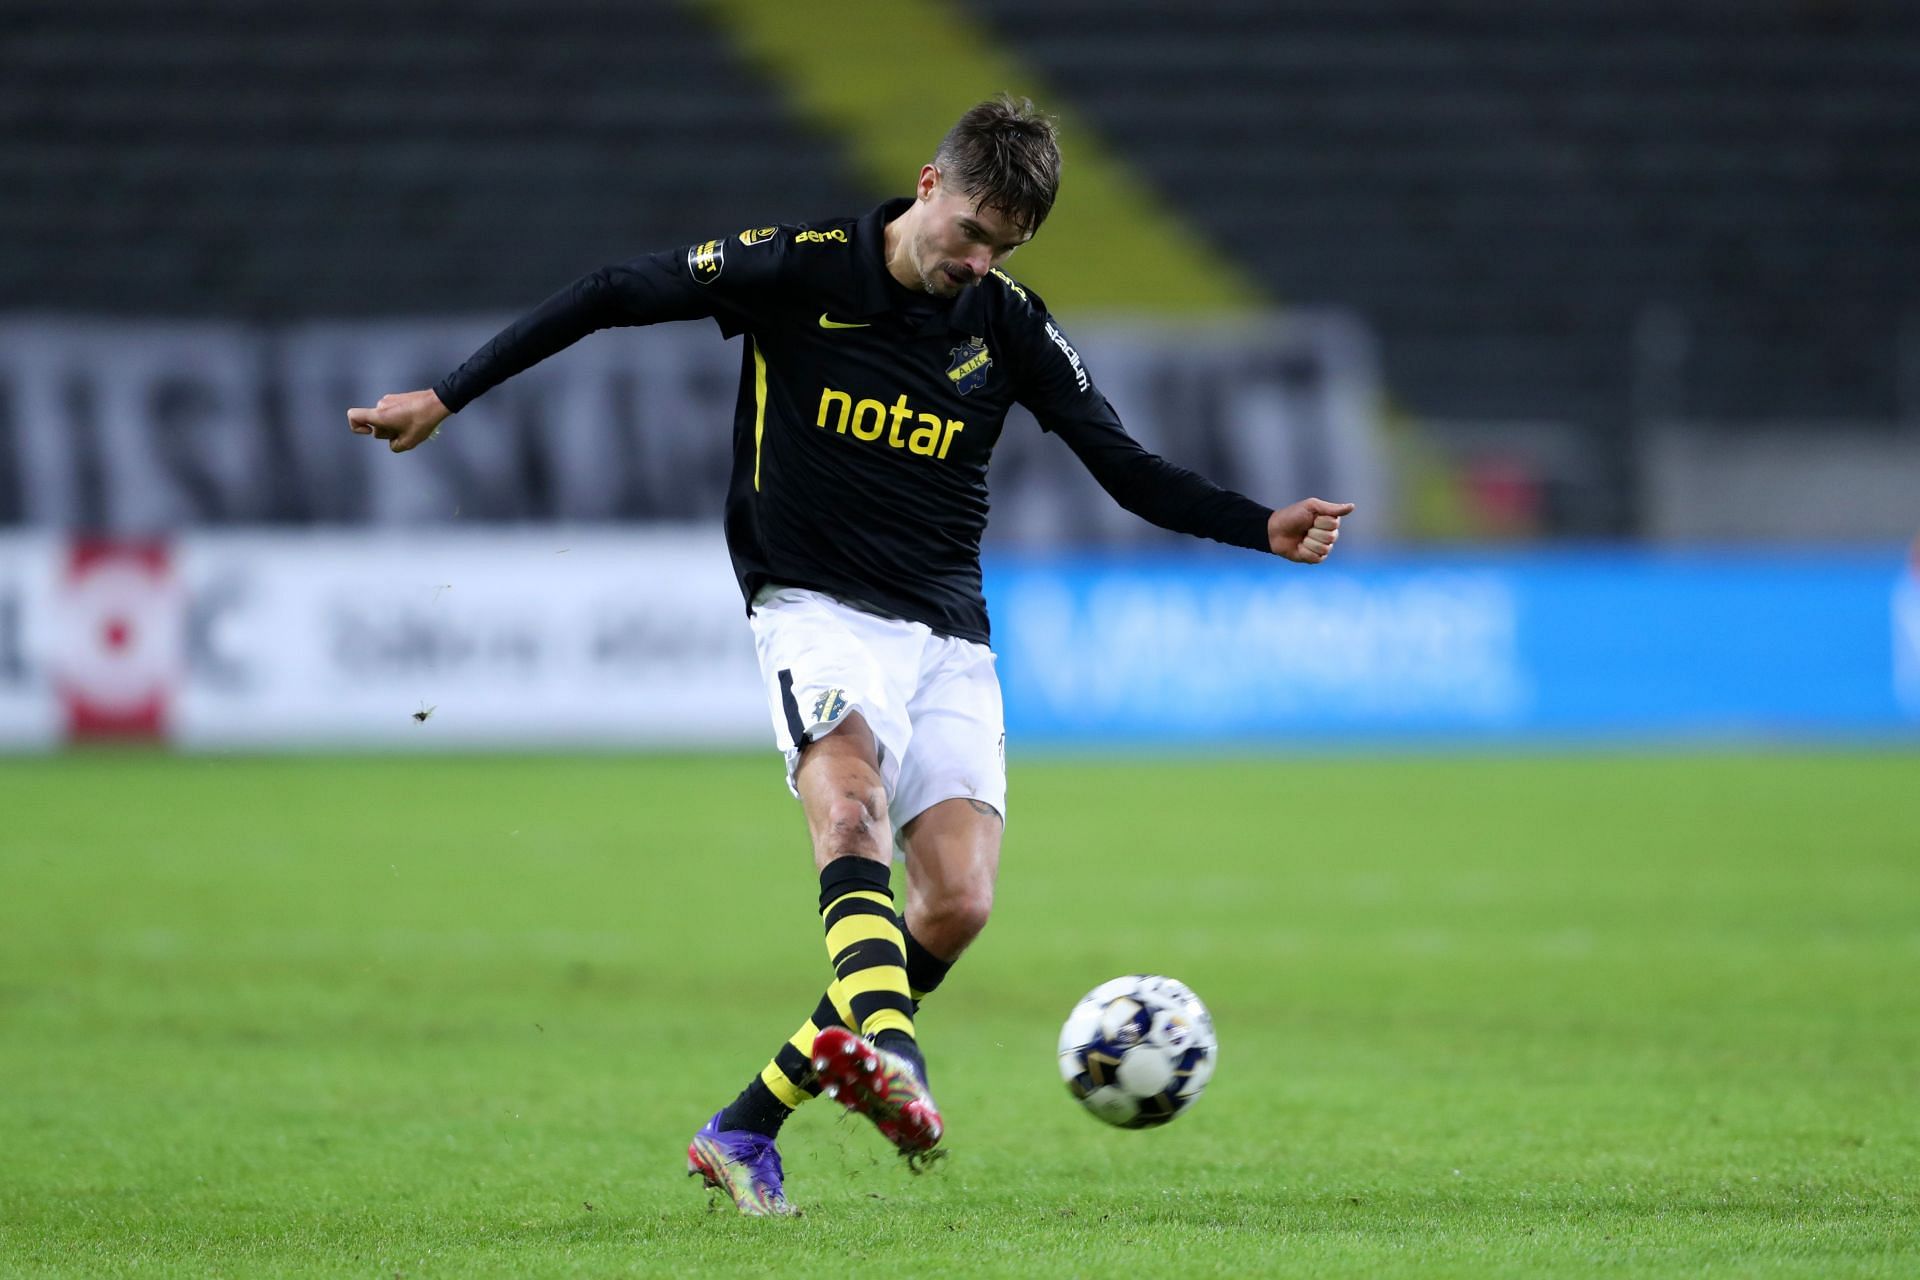 AIK face IF Elfsborg on Sunday